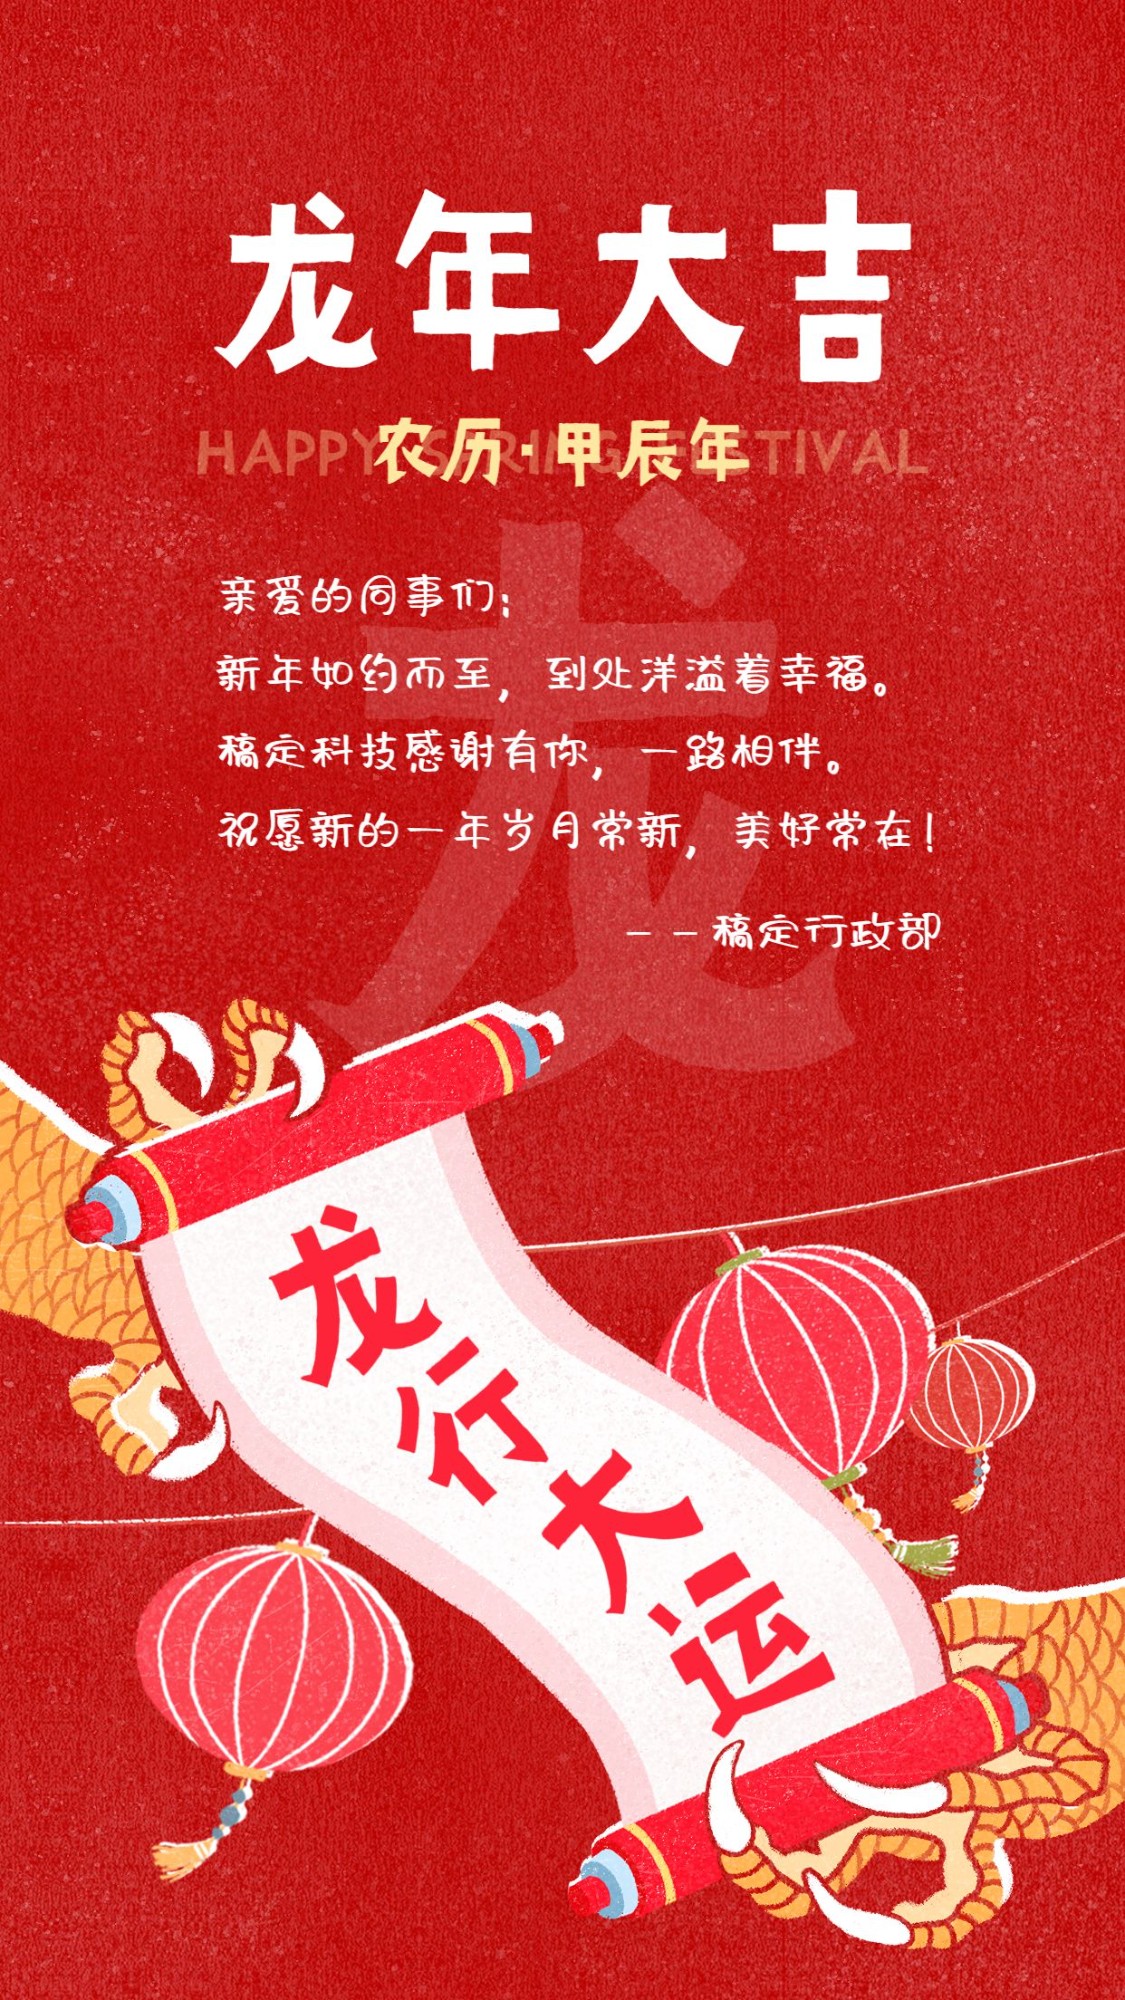 企业春节节日祝福贺卡插画风手机海报